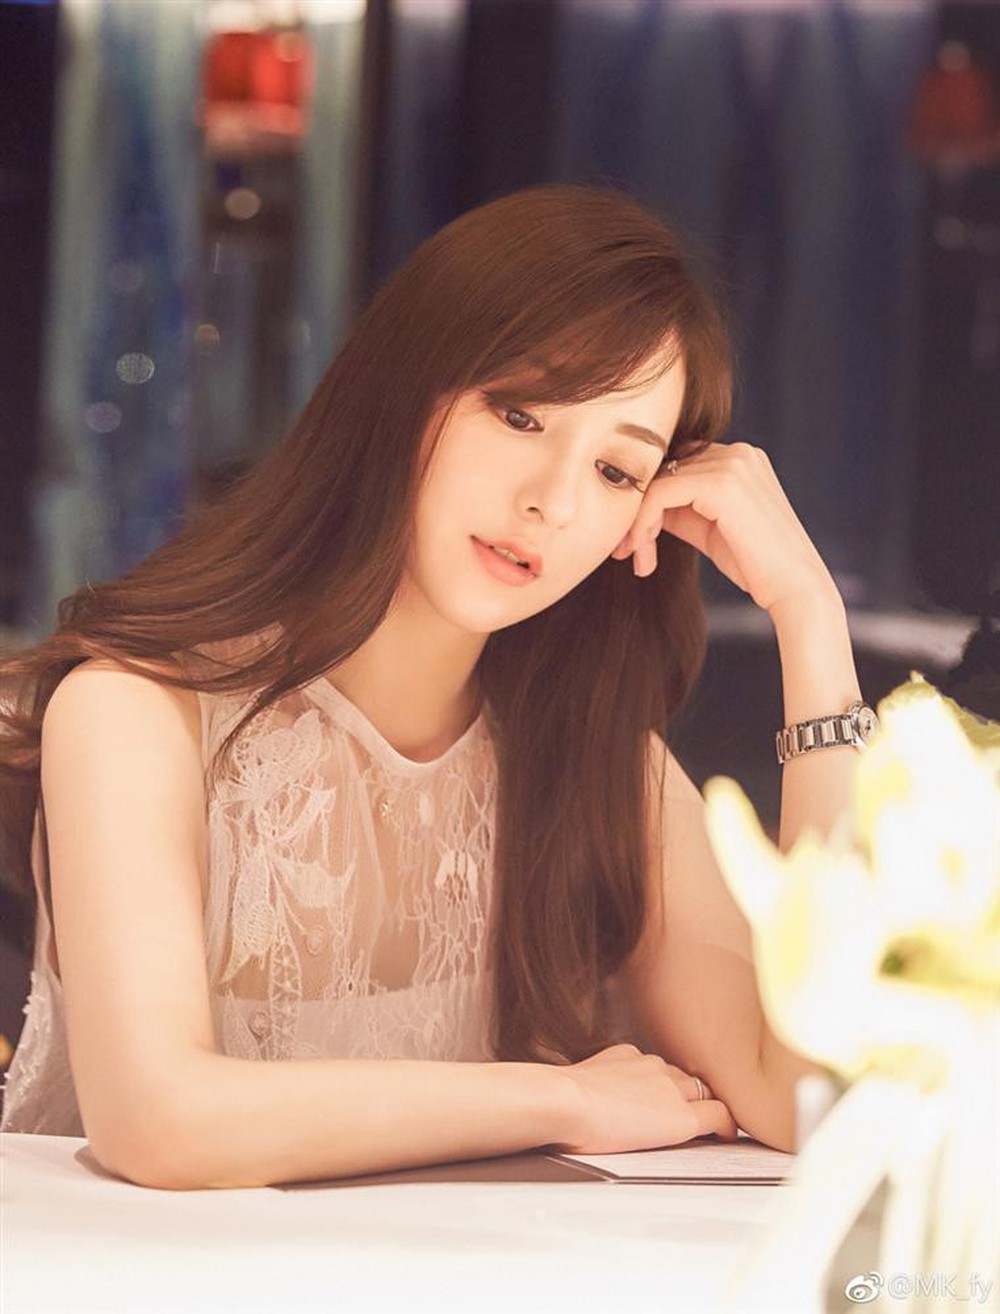 Bà xã kém 22 tuổi của Quách Phú Thành: Từ cô người mẫu nổi loạn chẳng ai hay đến người vợ ngoan “trói chặt” trái tim gã trai đa tình - Ảnh 3.